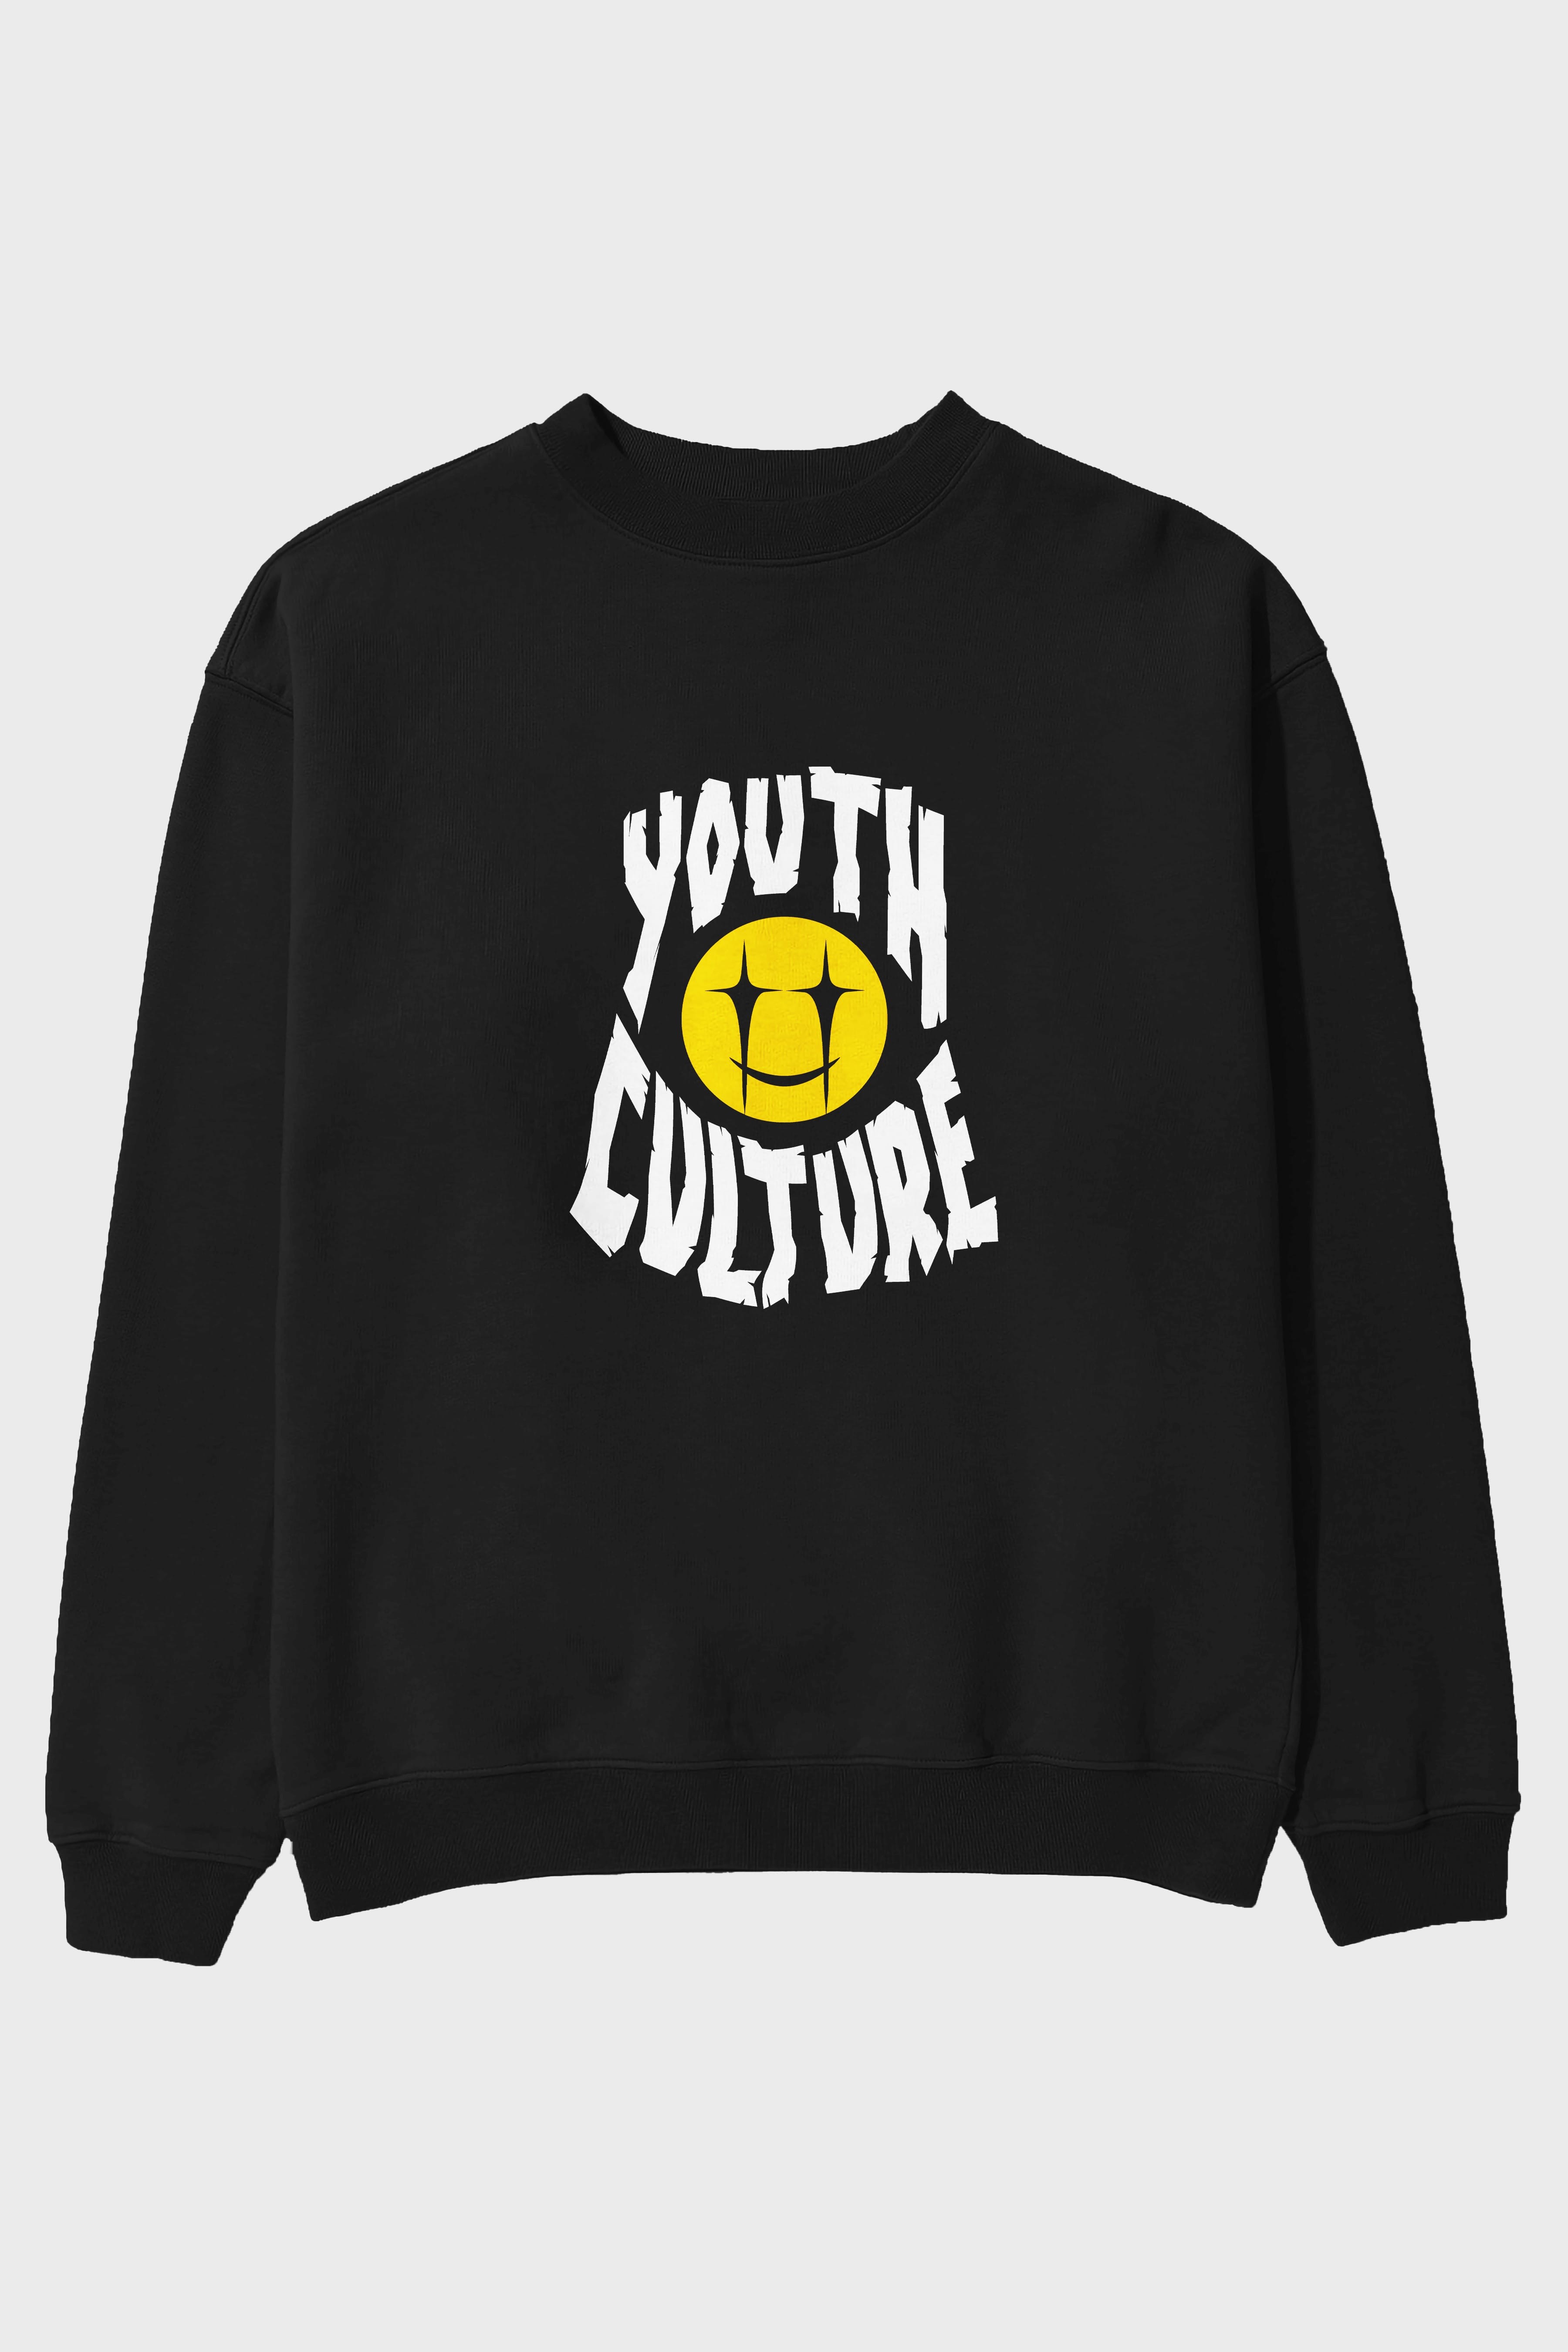 Youth Culture Ön Baskılı Oversize Sweatshirt Erkek Kadın Unisex